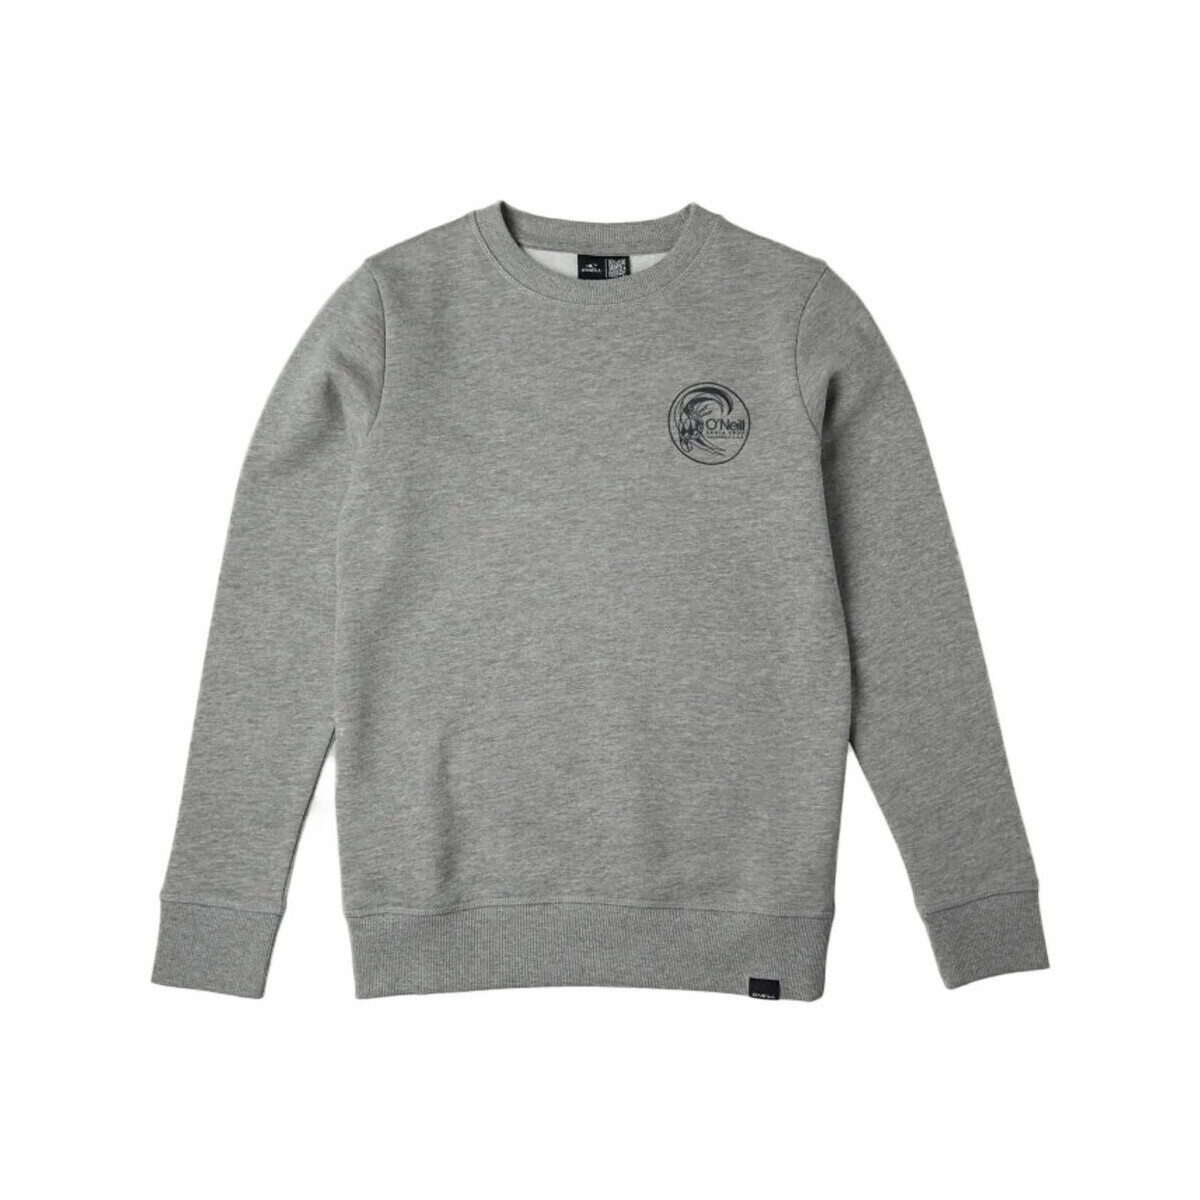 Textiel Jongens Sweaters / Sweatshirts O'neill  Grijs